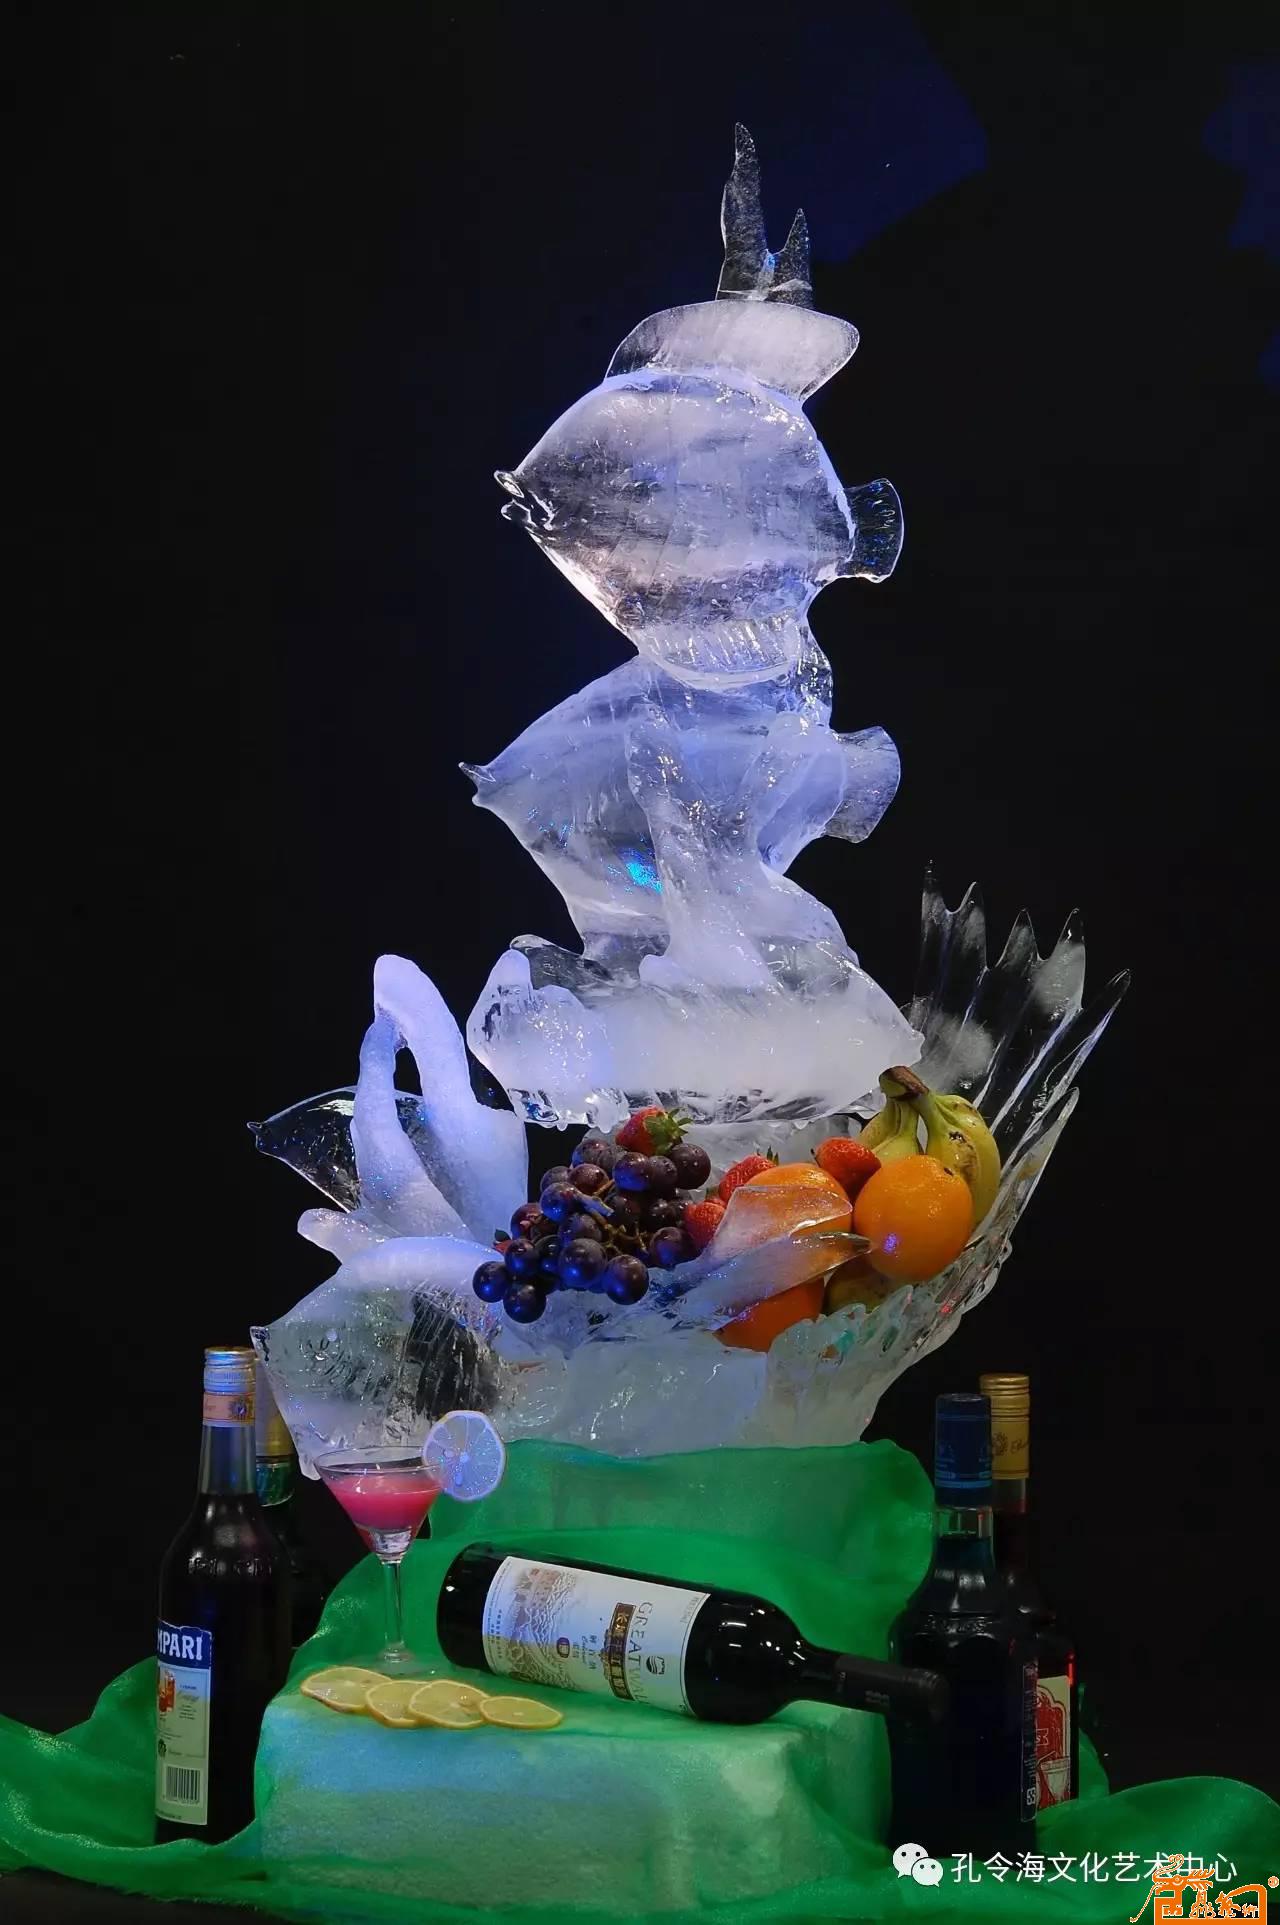 冰雕作品:《海底世界》 原料:冰